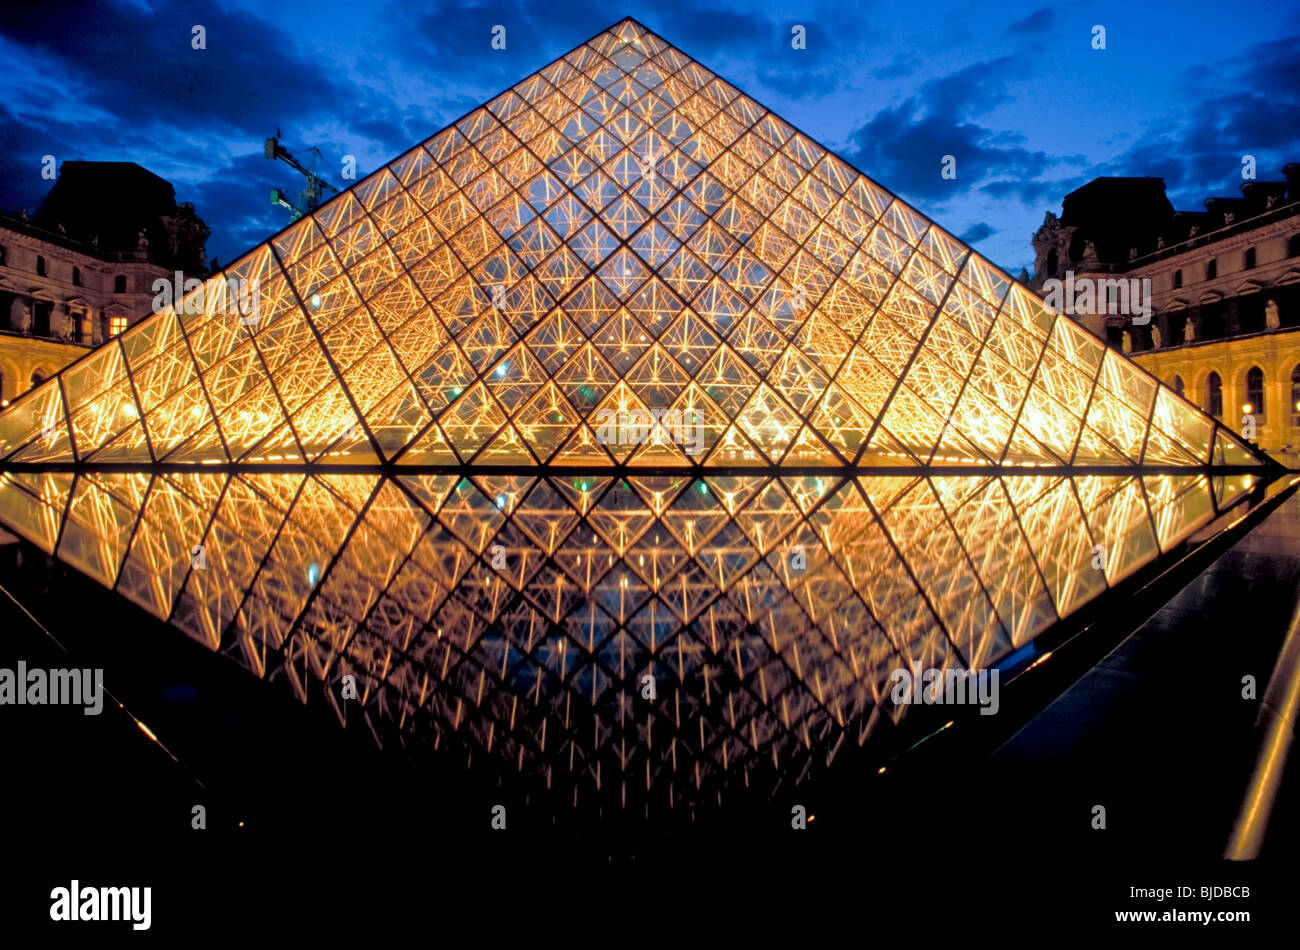 Paris, France- Pyramide de verre au musée du Louvre, éclairé la nuit,  Architecte : I.M. Pei Photo Stock - Alamy